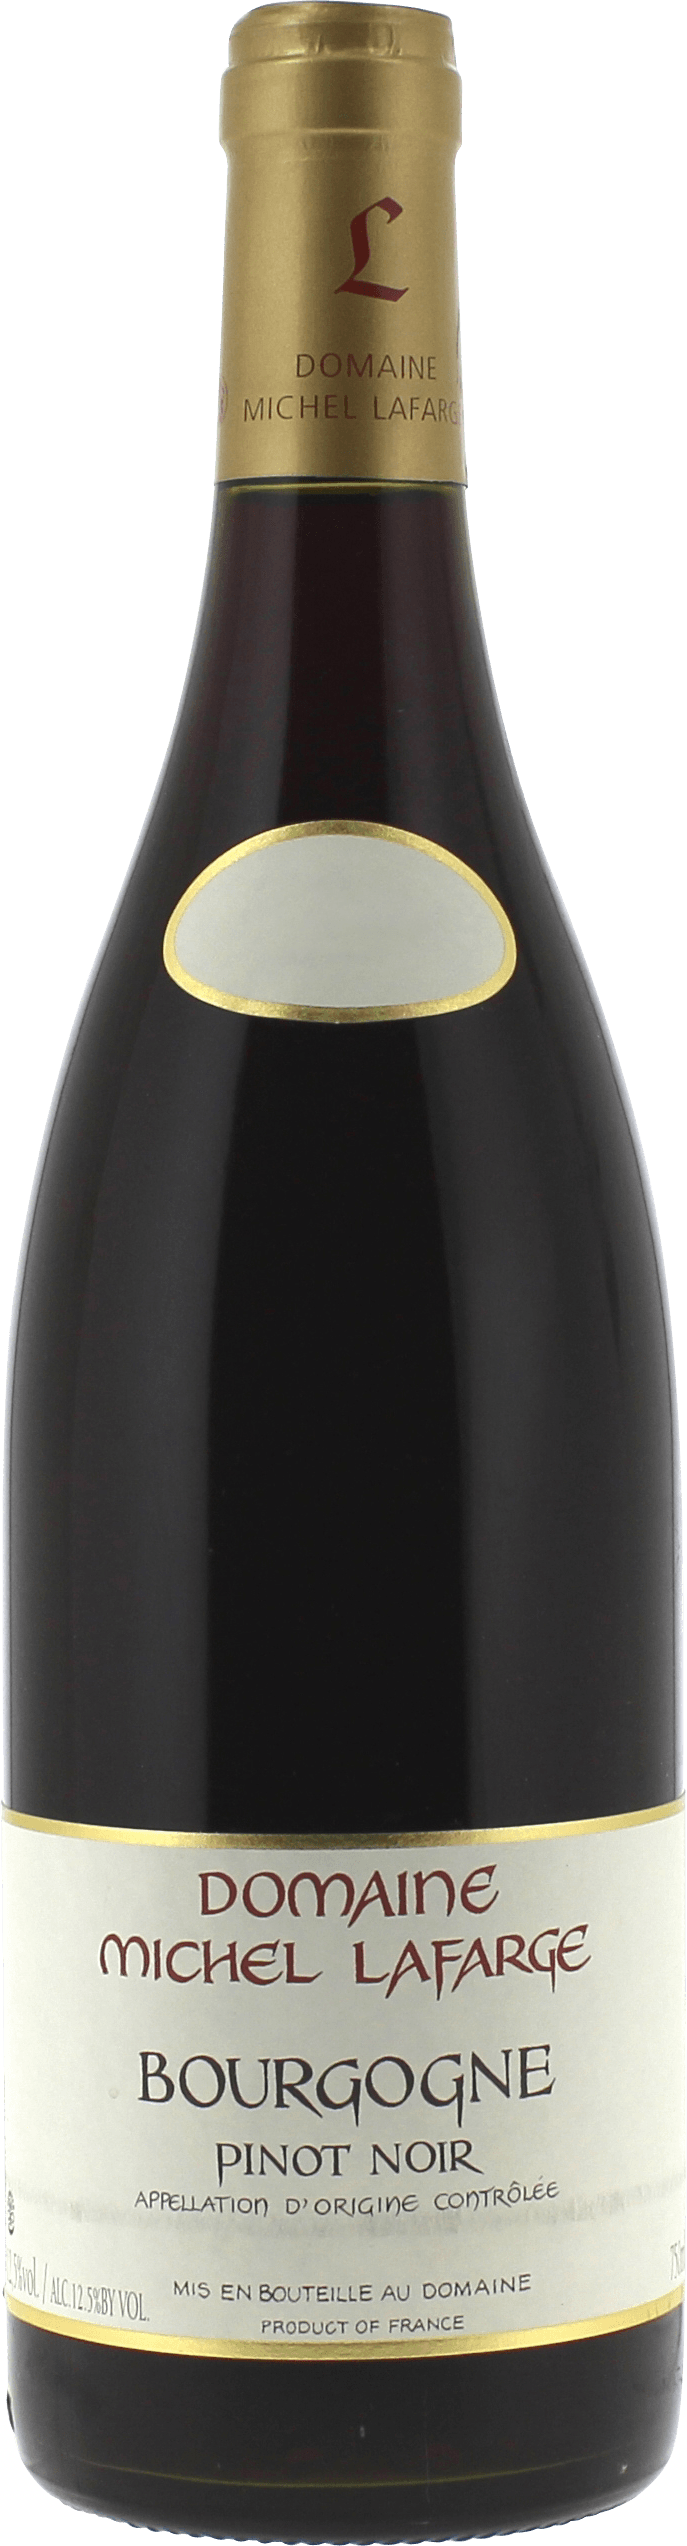 Bourgogne pinot noir 2015  LAFARGE, Bourgogne rouge